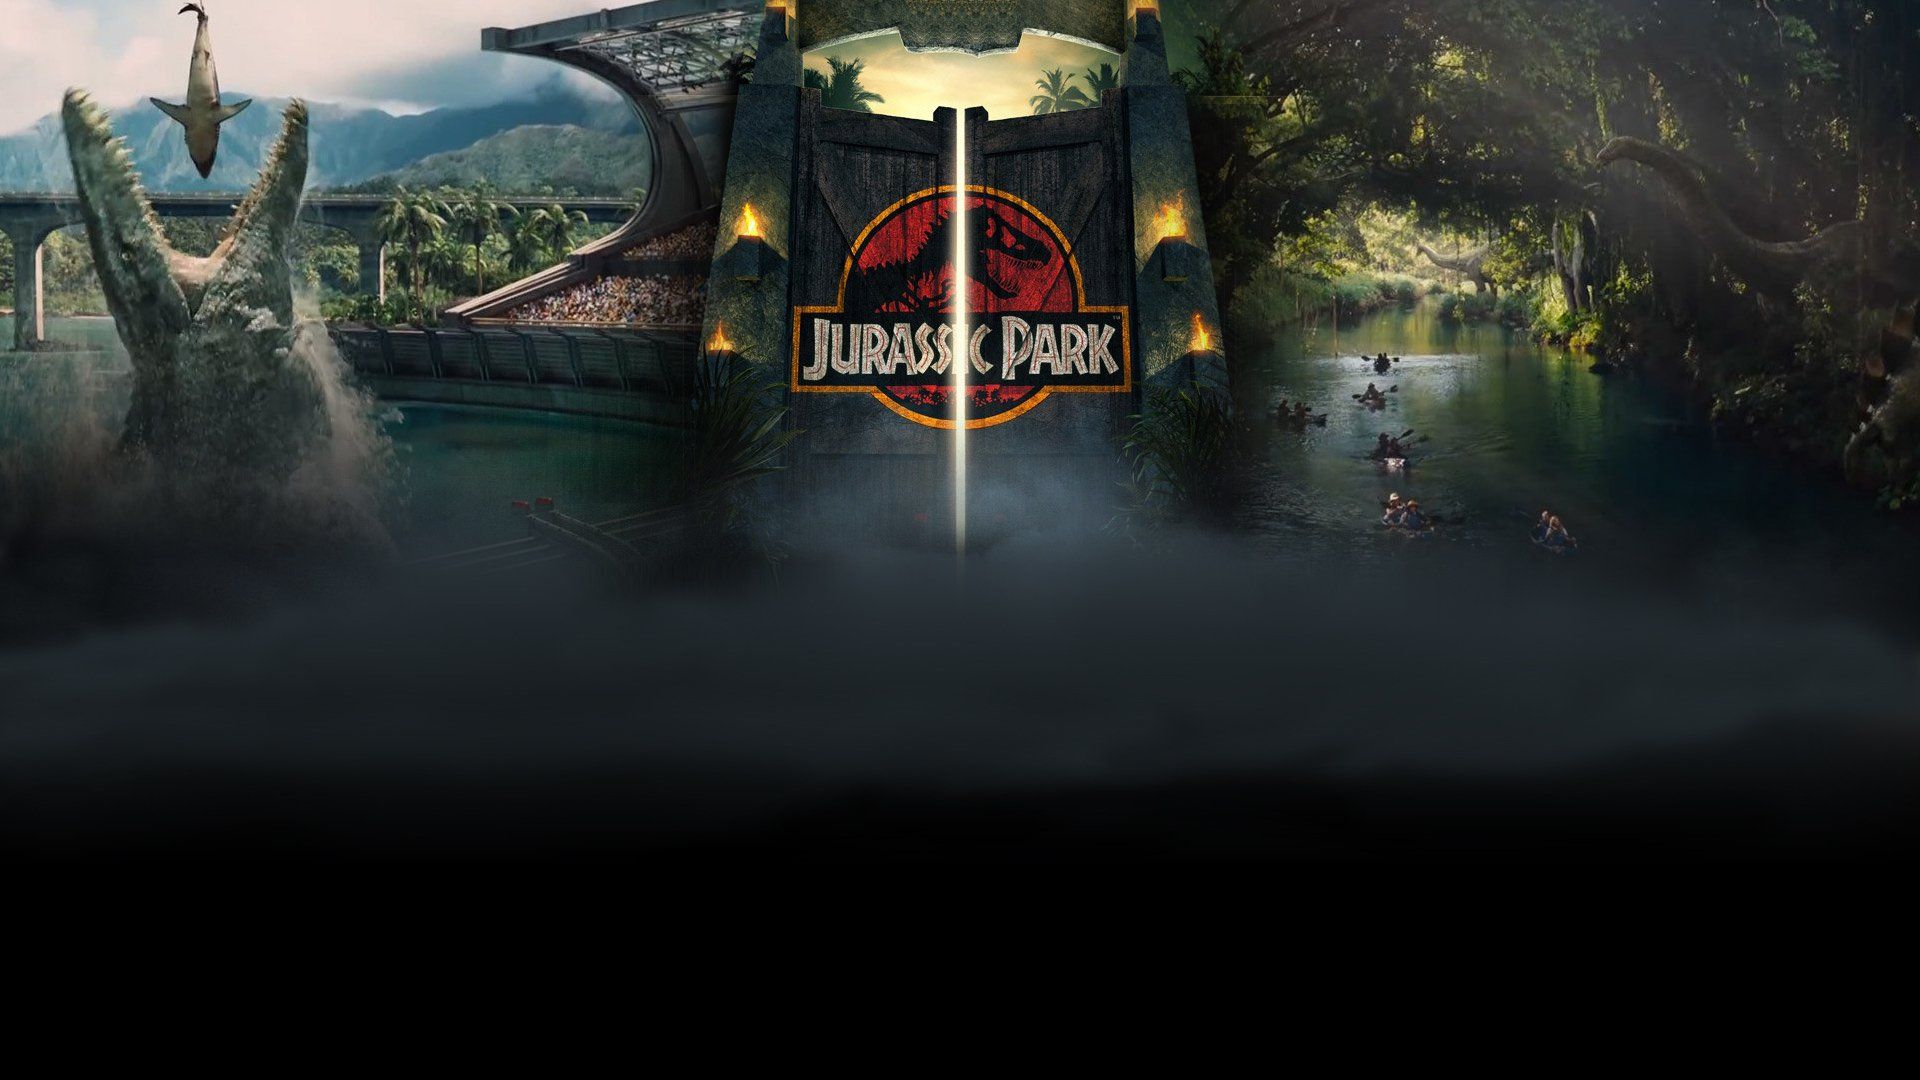 Free download Filme Jurassic World Wallpaper [1920x1080]